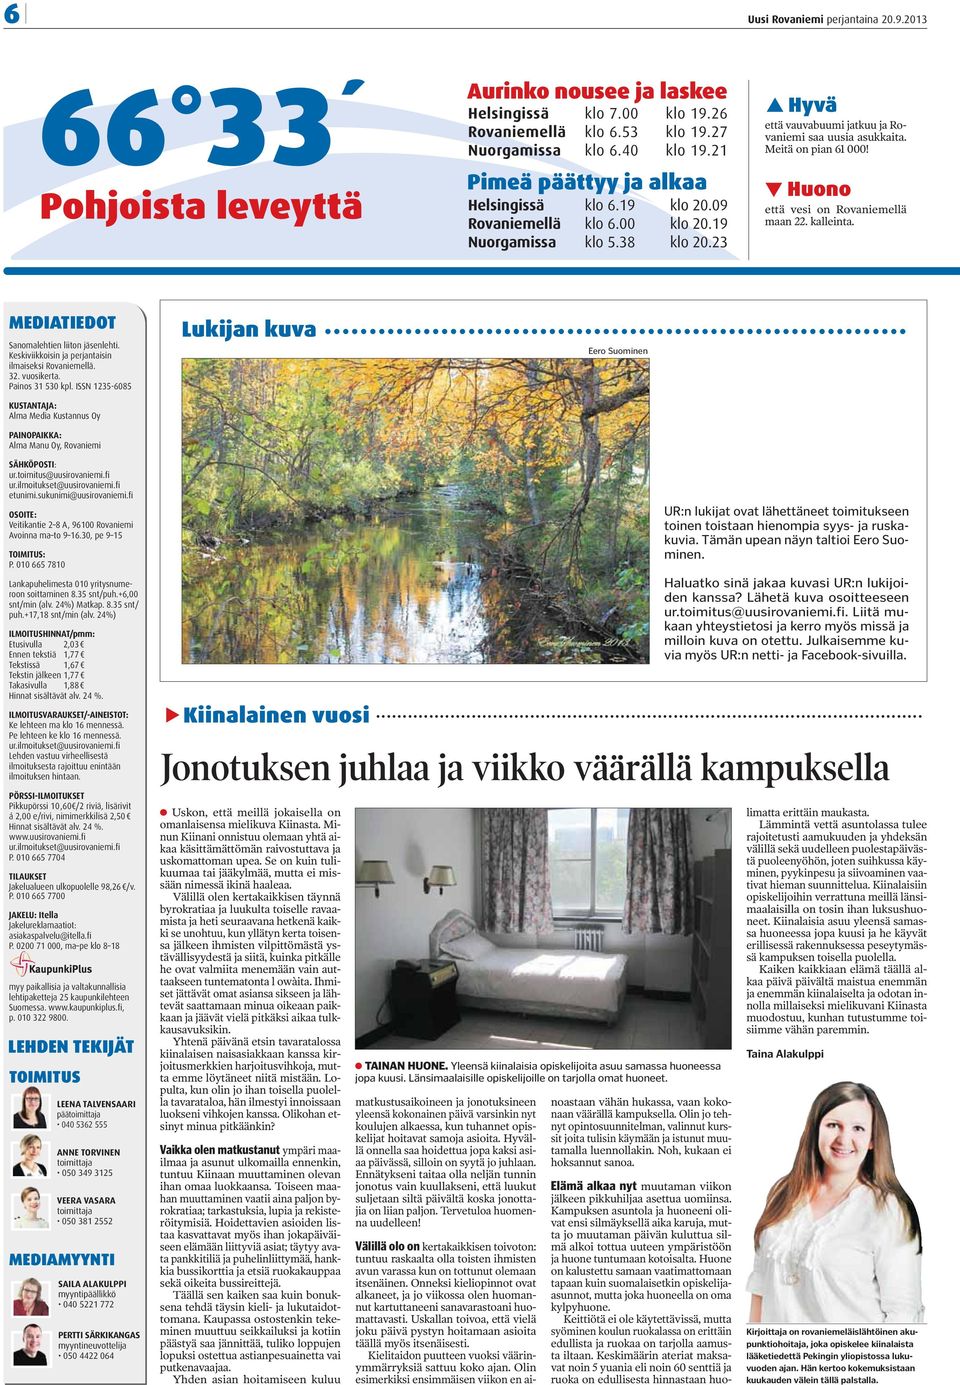 Meitä on pian 61 000! Huono että vesi on Rovaniemellä maan 22. kalleinta. MEDIATIEDOT Sanomalehtien liiton jäsenlehti. Keskiviikkoisin ja perjantaisin ilmaiseksi Rovaniemellä. 32. vuosikerta.